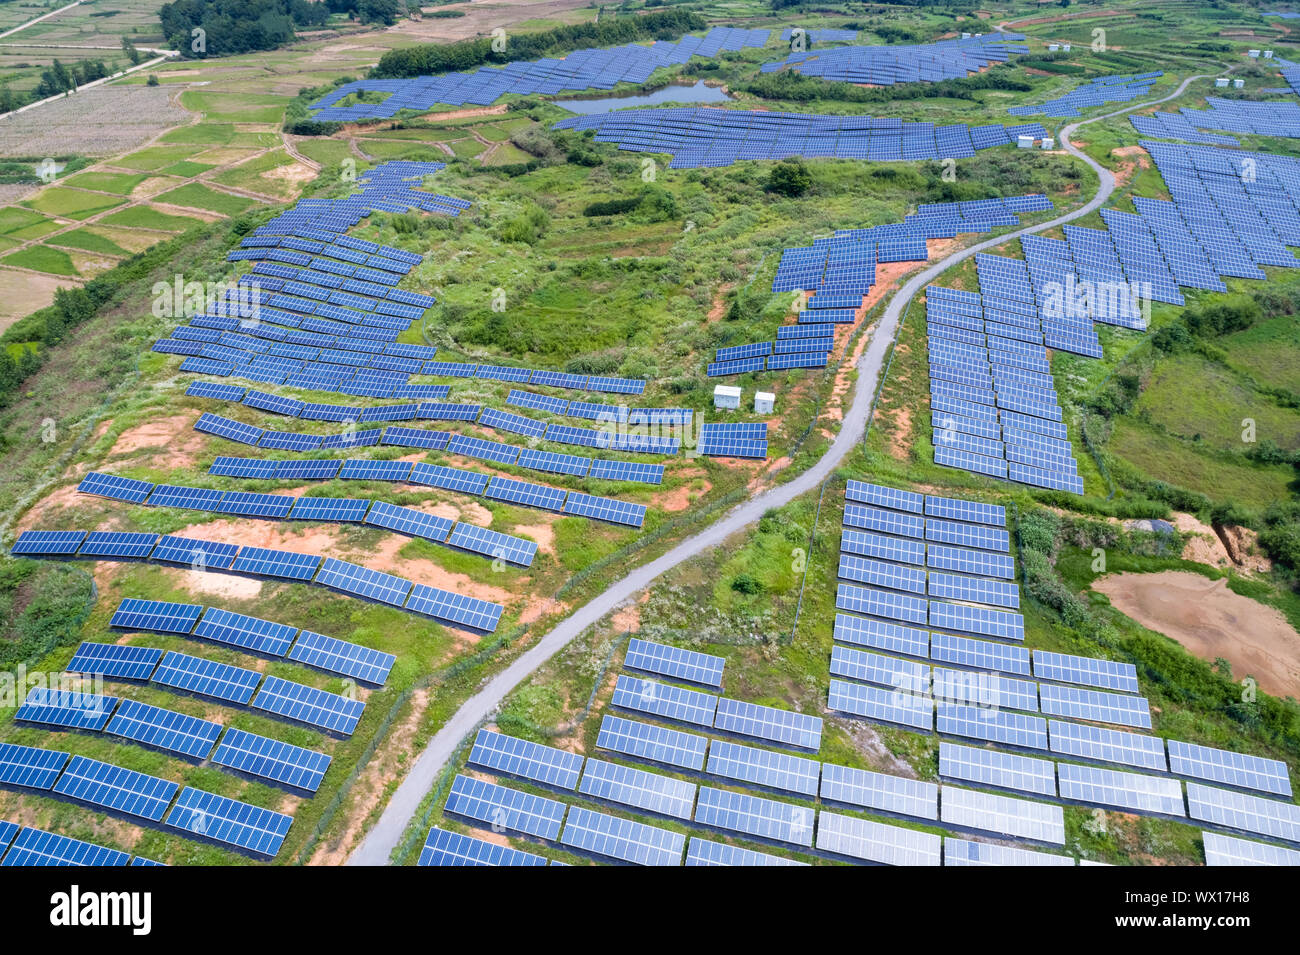 solar power panels on hillside Stock Photo